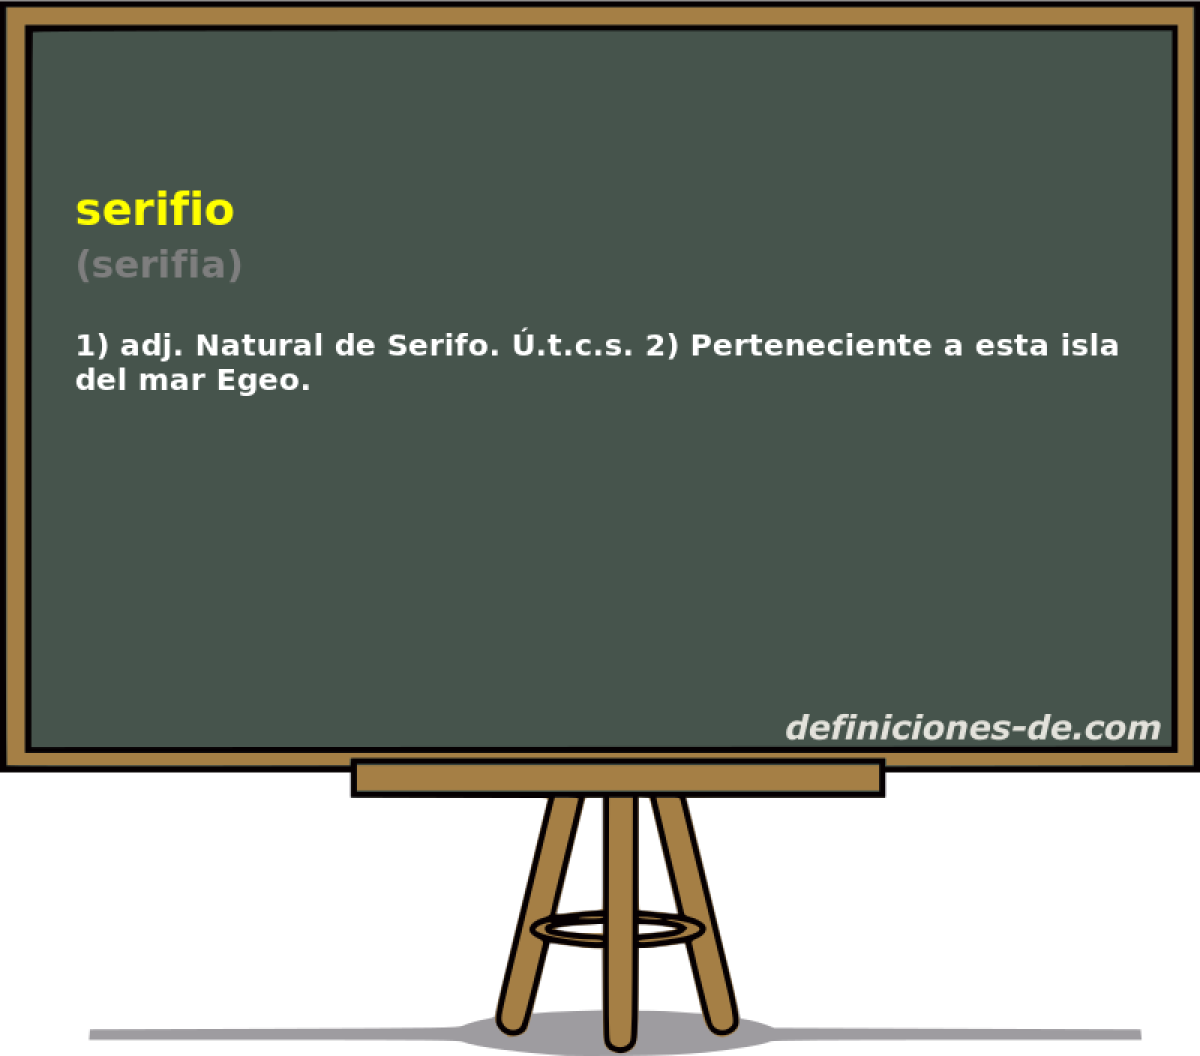 serifio (serifia)